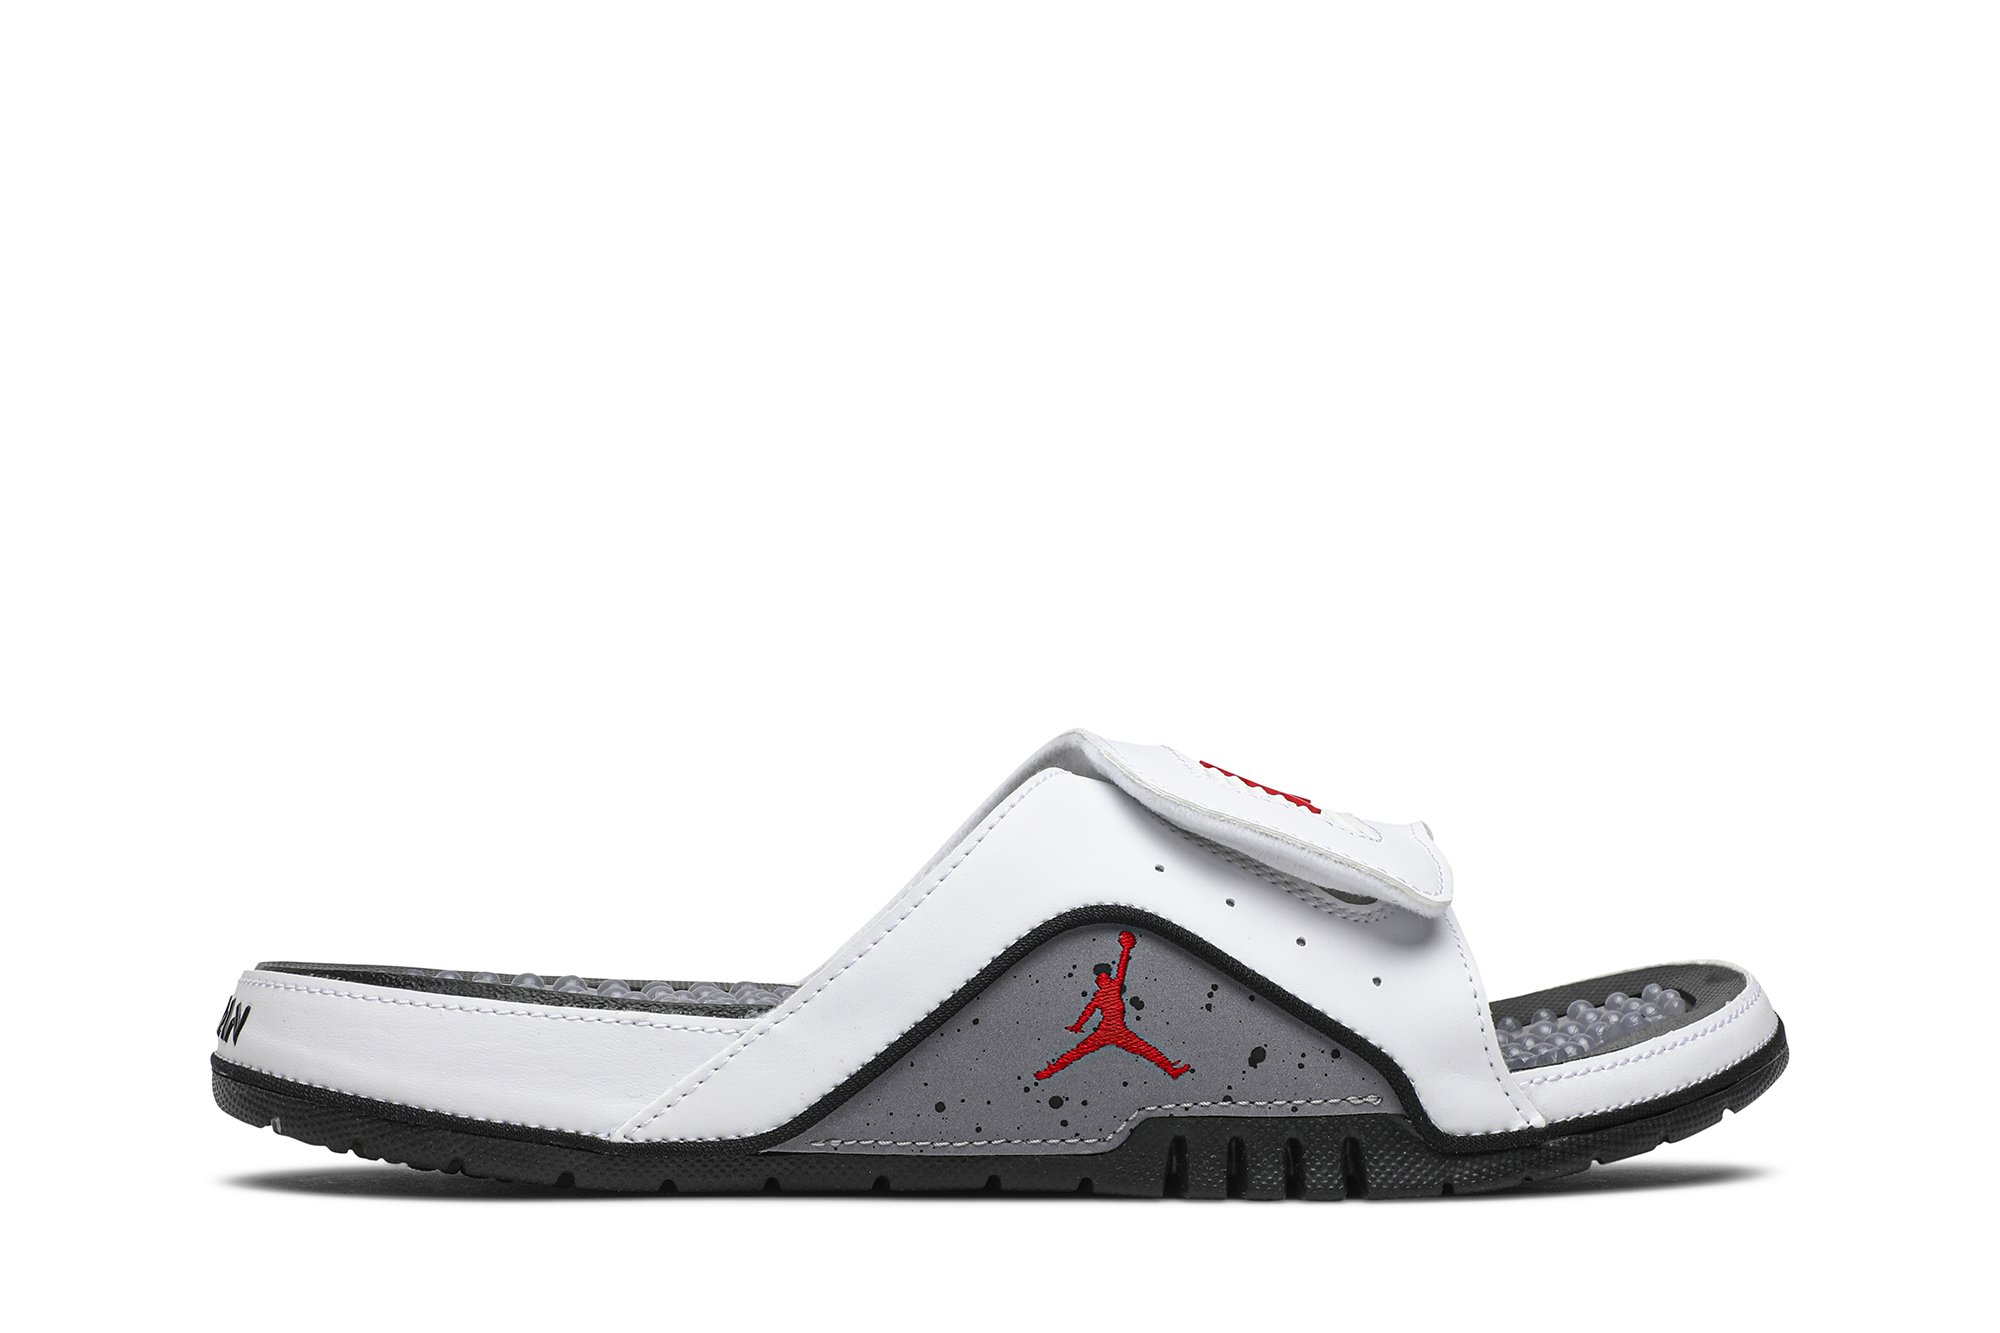 Buy Jordan Hydro 4 Retro Slide 'White Cement' - 532225 116 | GOAT